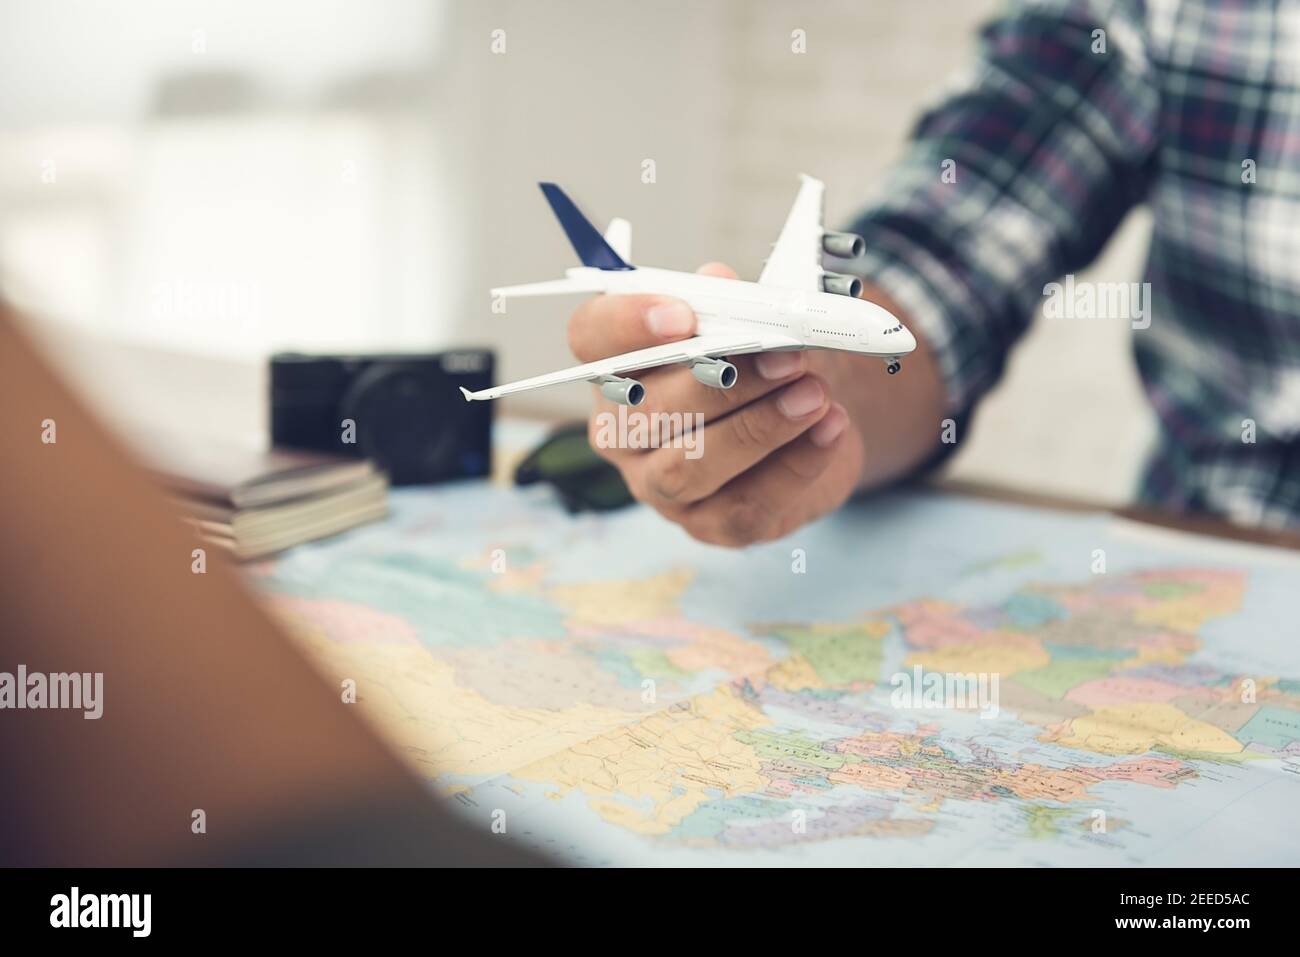 Homme tenant un modèle d'avion sur une carte du monde tout en planifiant un voyage de vacances à bord pour lui et son partenaire à leurs destinations de rêve Banque D'Images